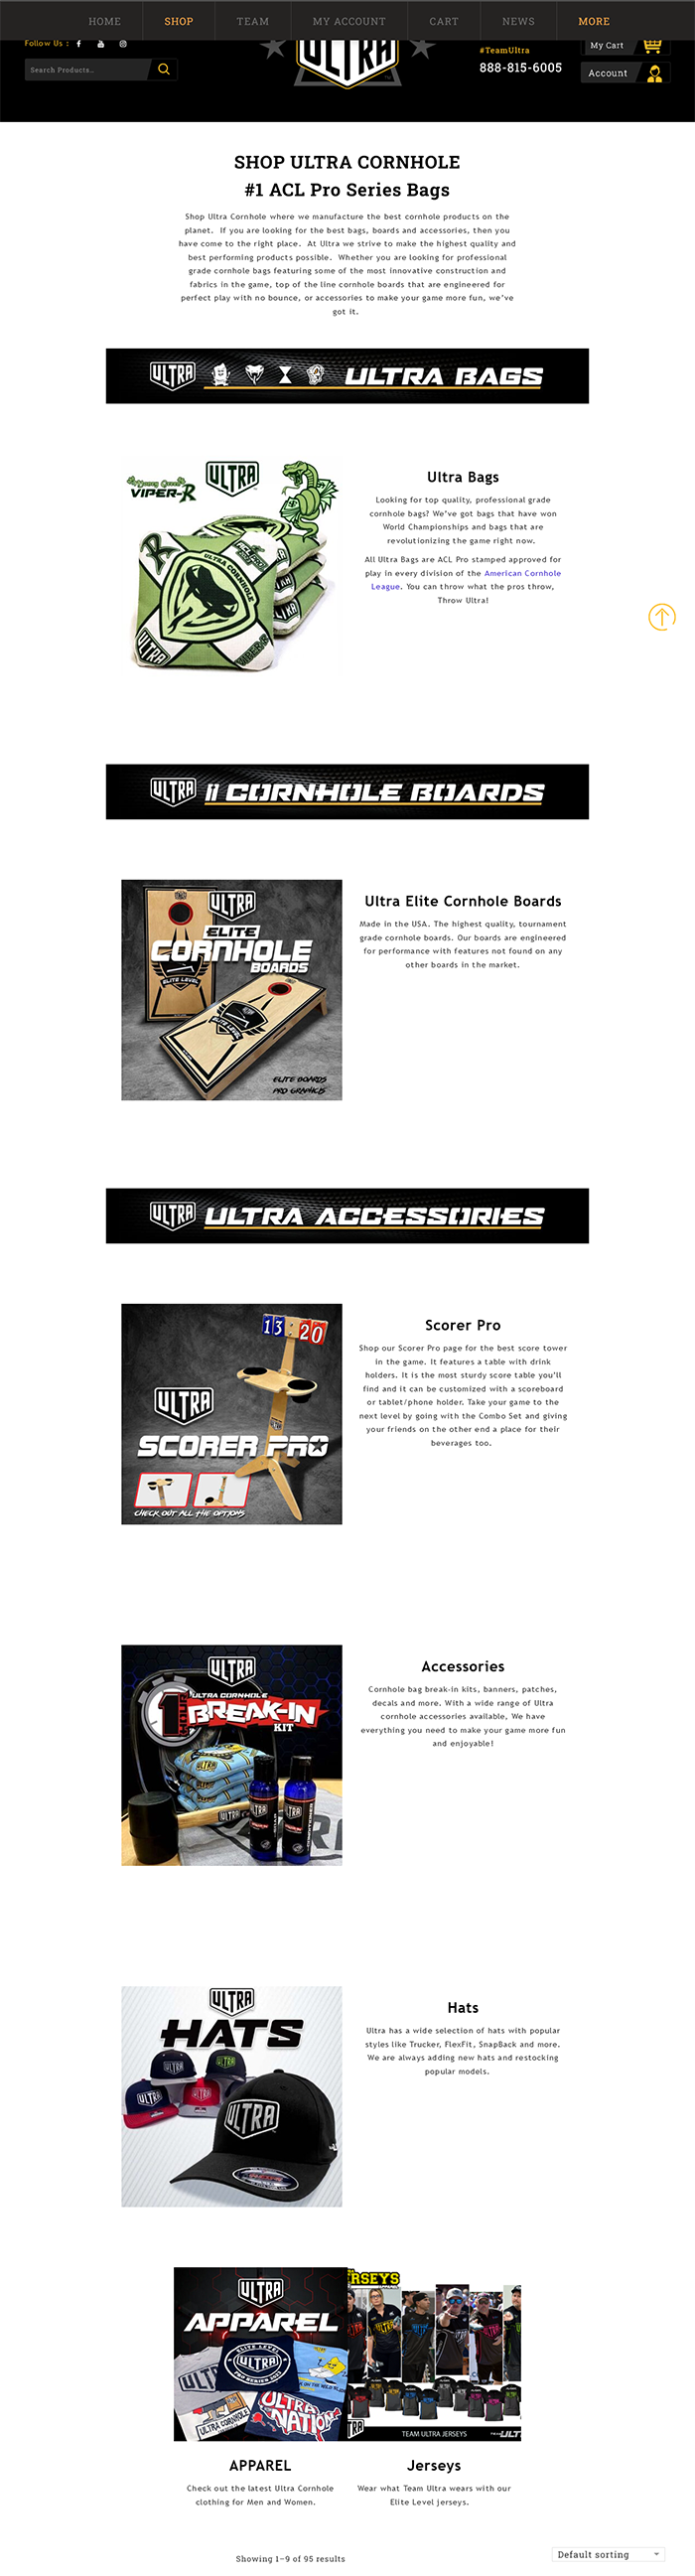 Ultra Cornhole product page